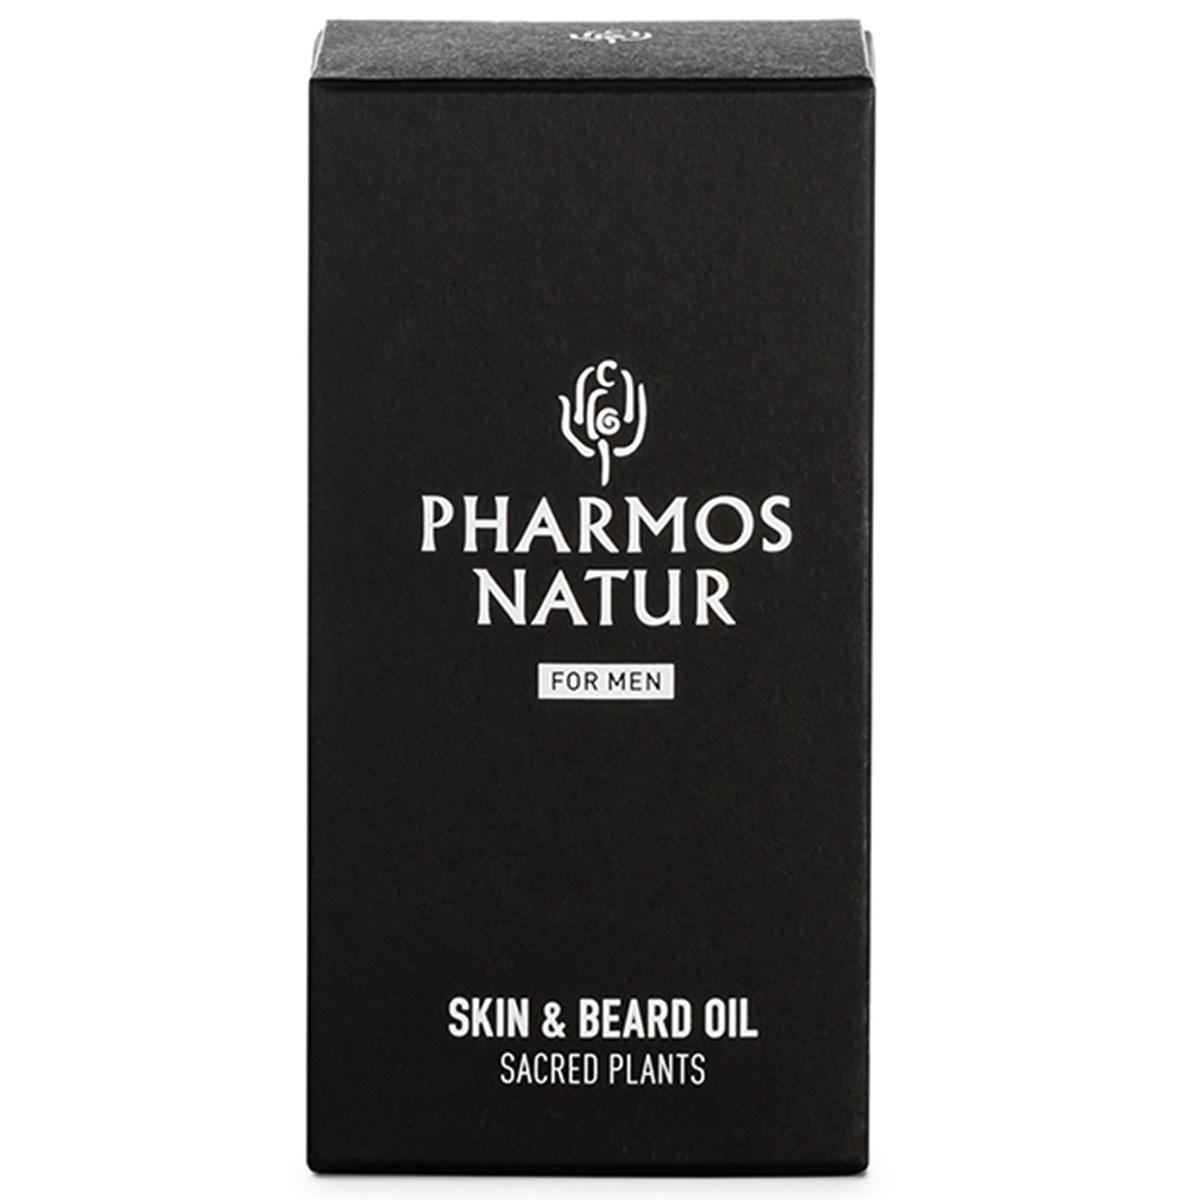 PHARMOS NATUR Nature of Men Skin & Beard Oil 15 ml - 3